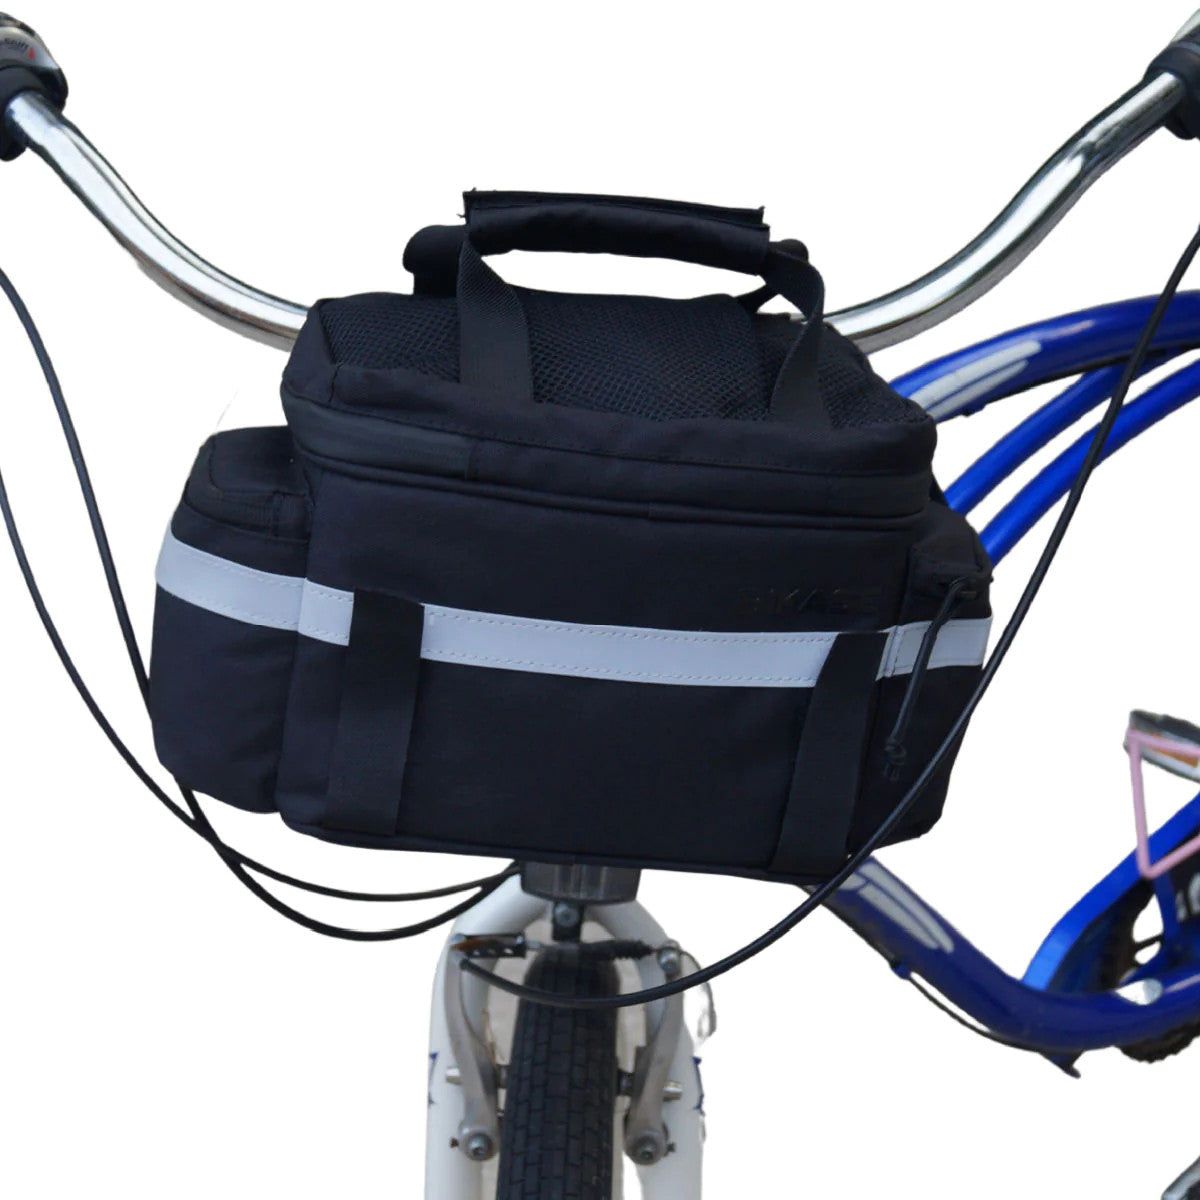 BiKase Koolpak Insulated Bike Trunk or Handlebar Bag